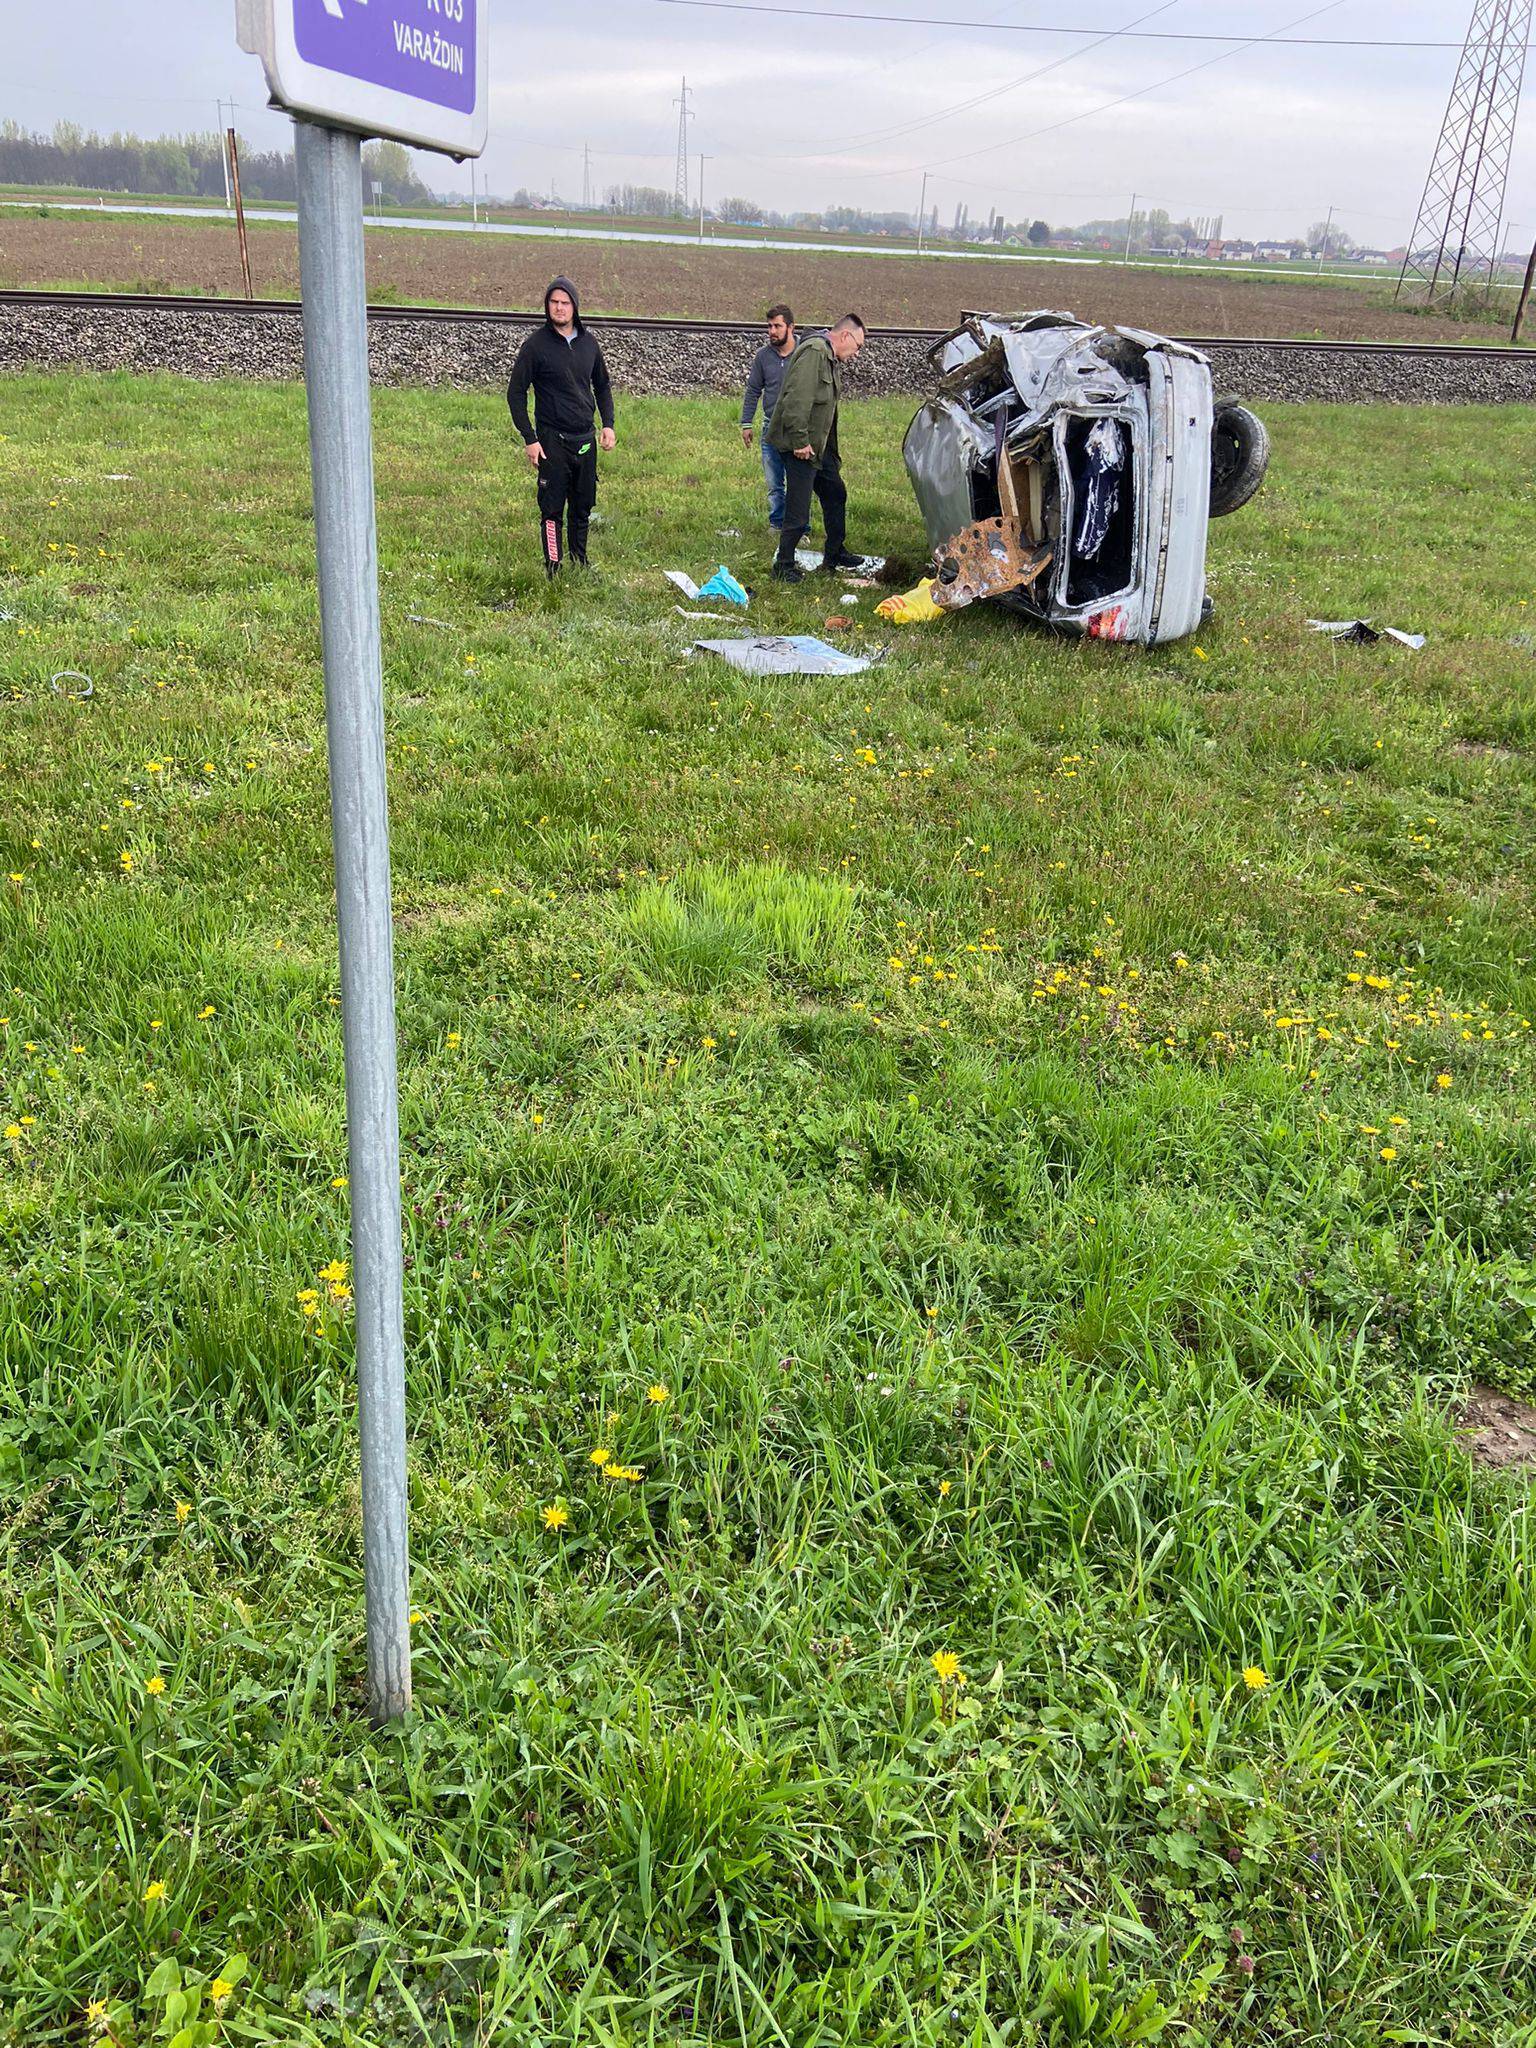 Strašne scene iz Ludbrega. Vlak potpuno uništio auto, a vozač je u bolnici: 'Bio je pri svijesti...'